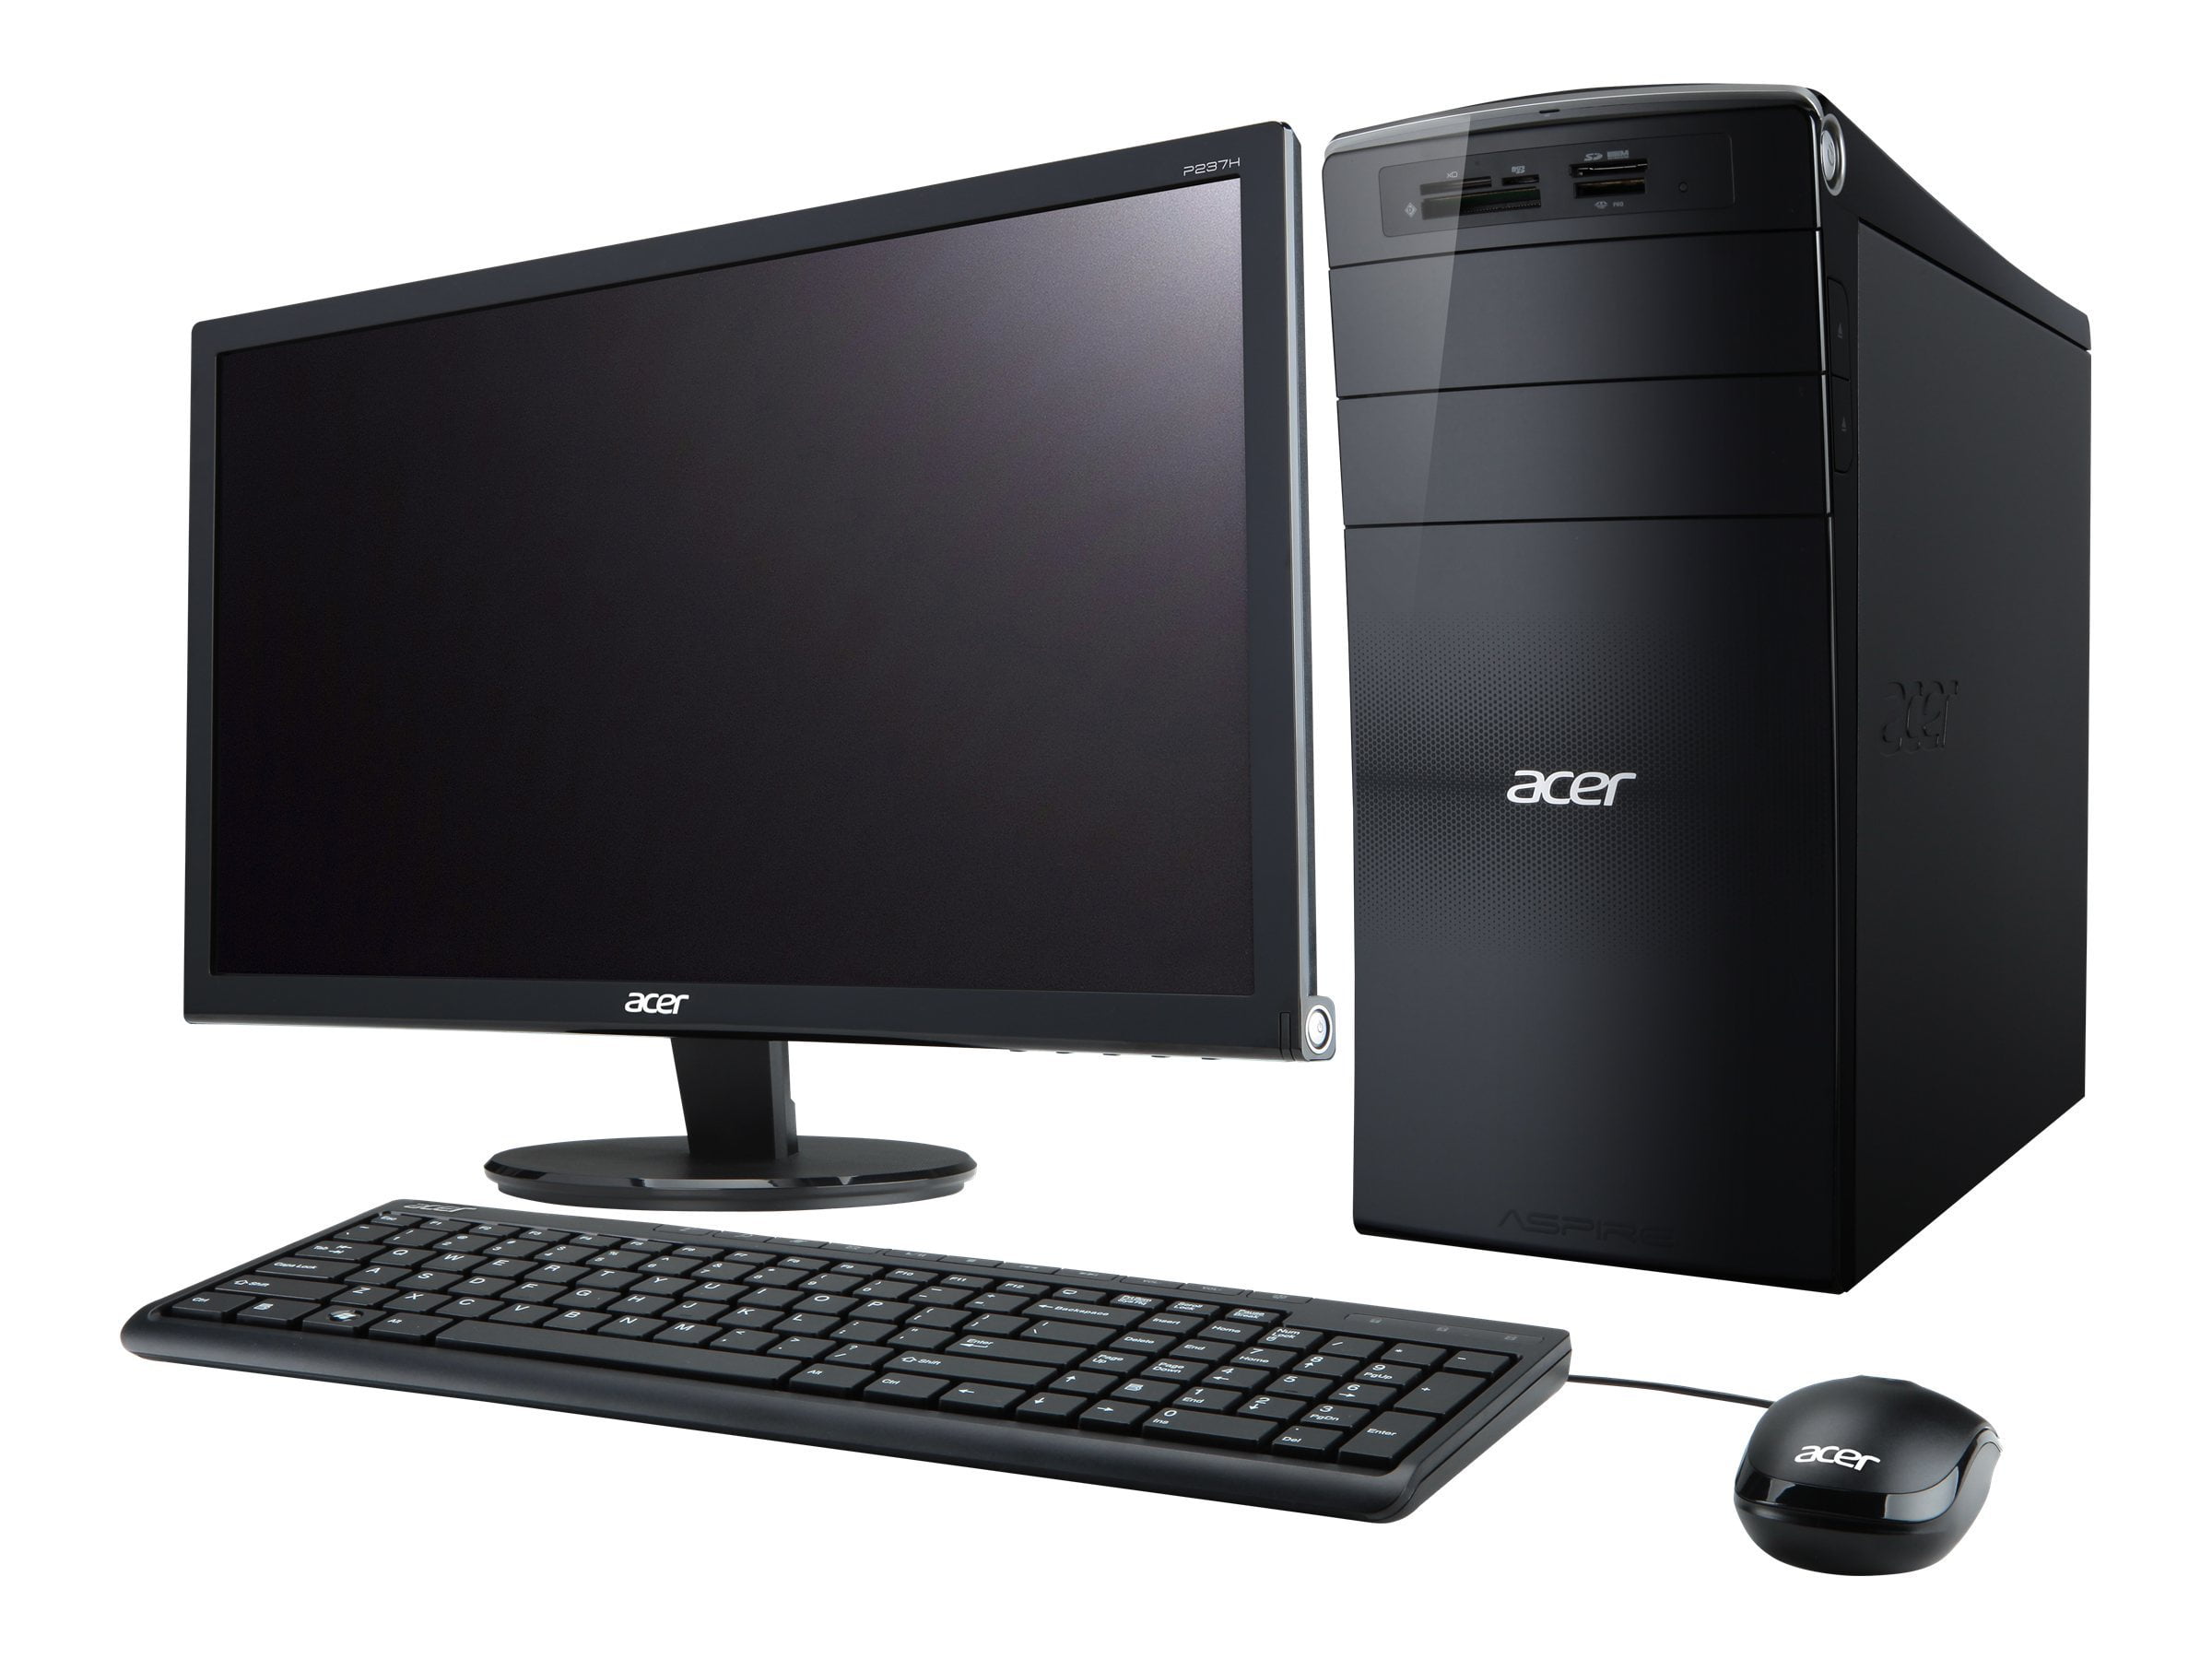 Acer Aspire m3970. Acer Aspire m3985. Acer Aspire m1930. Acer Aspire m3201.